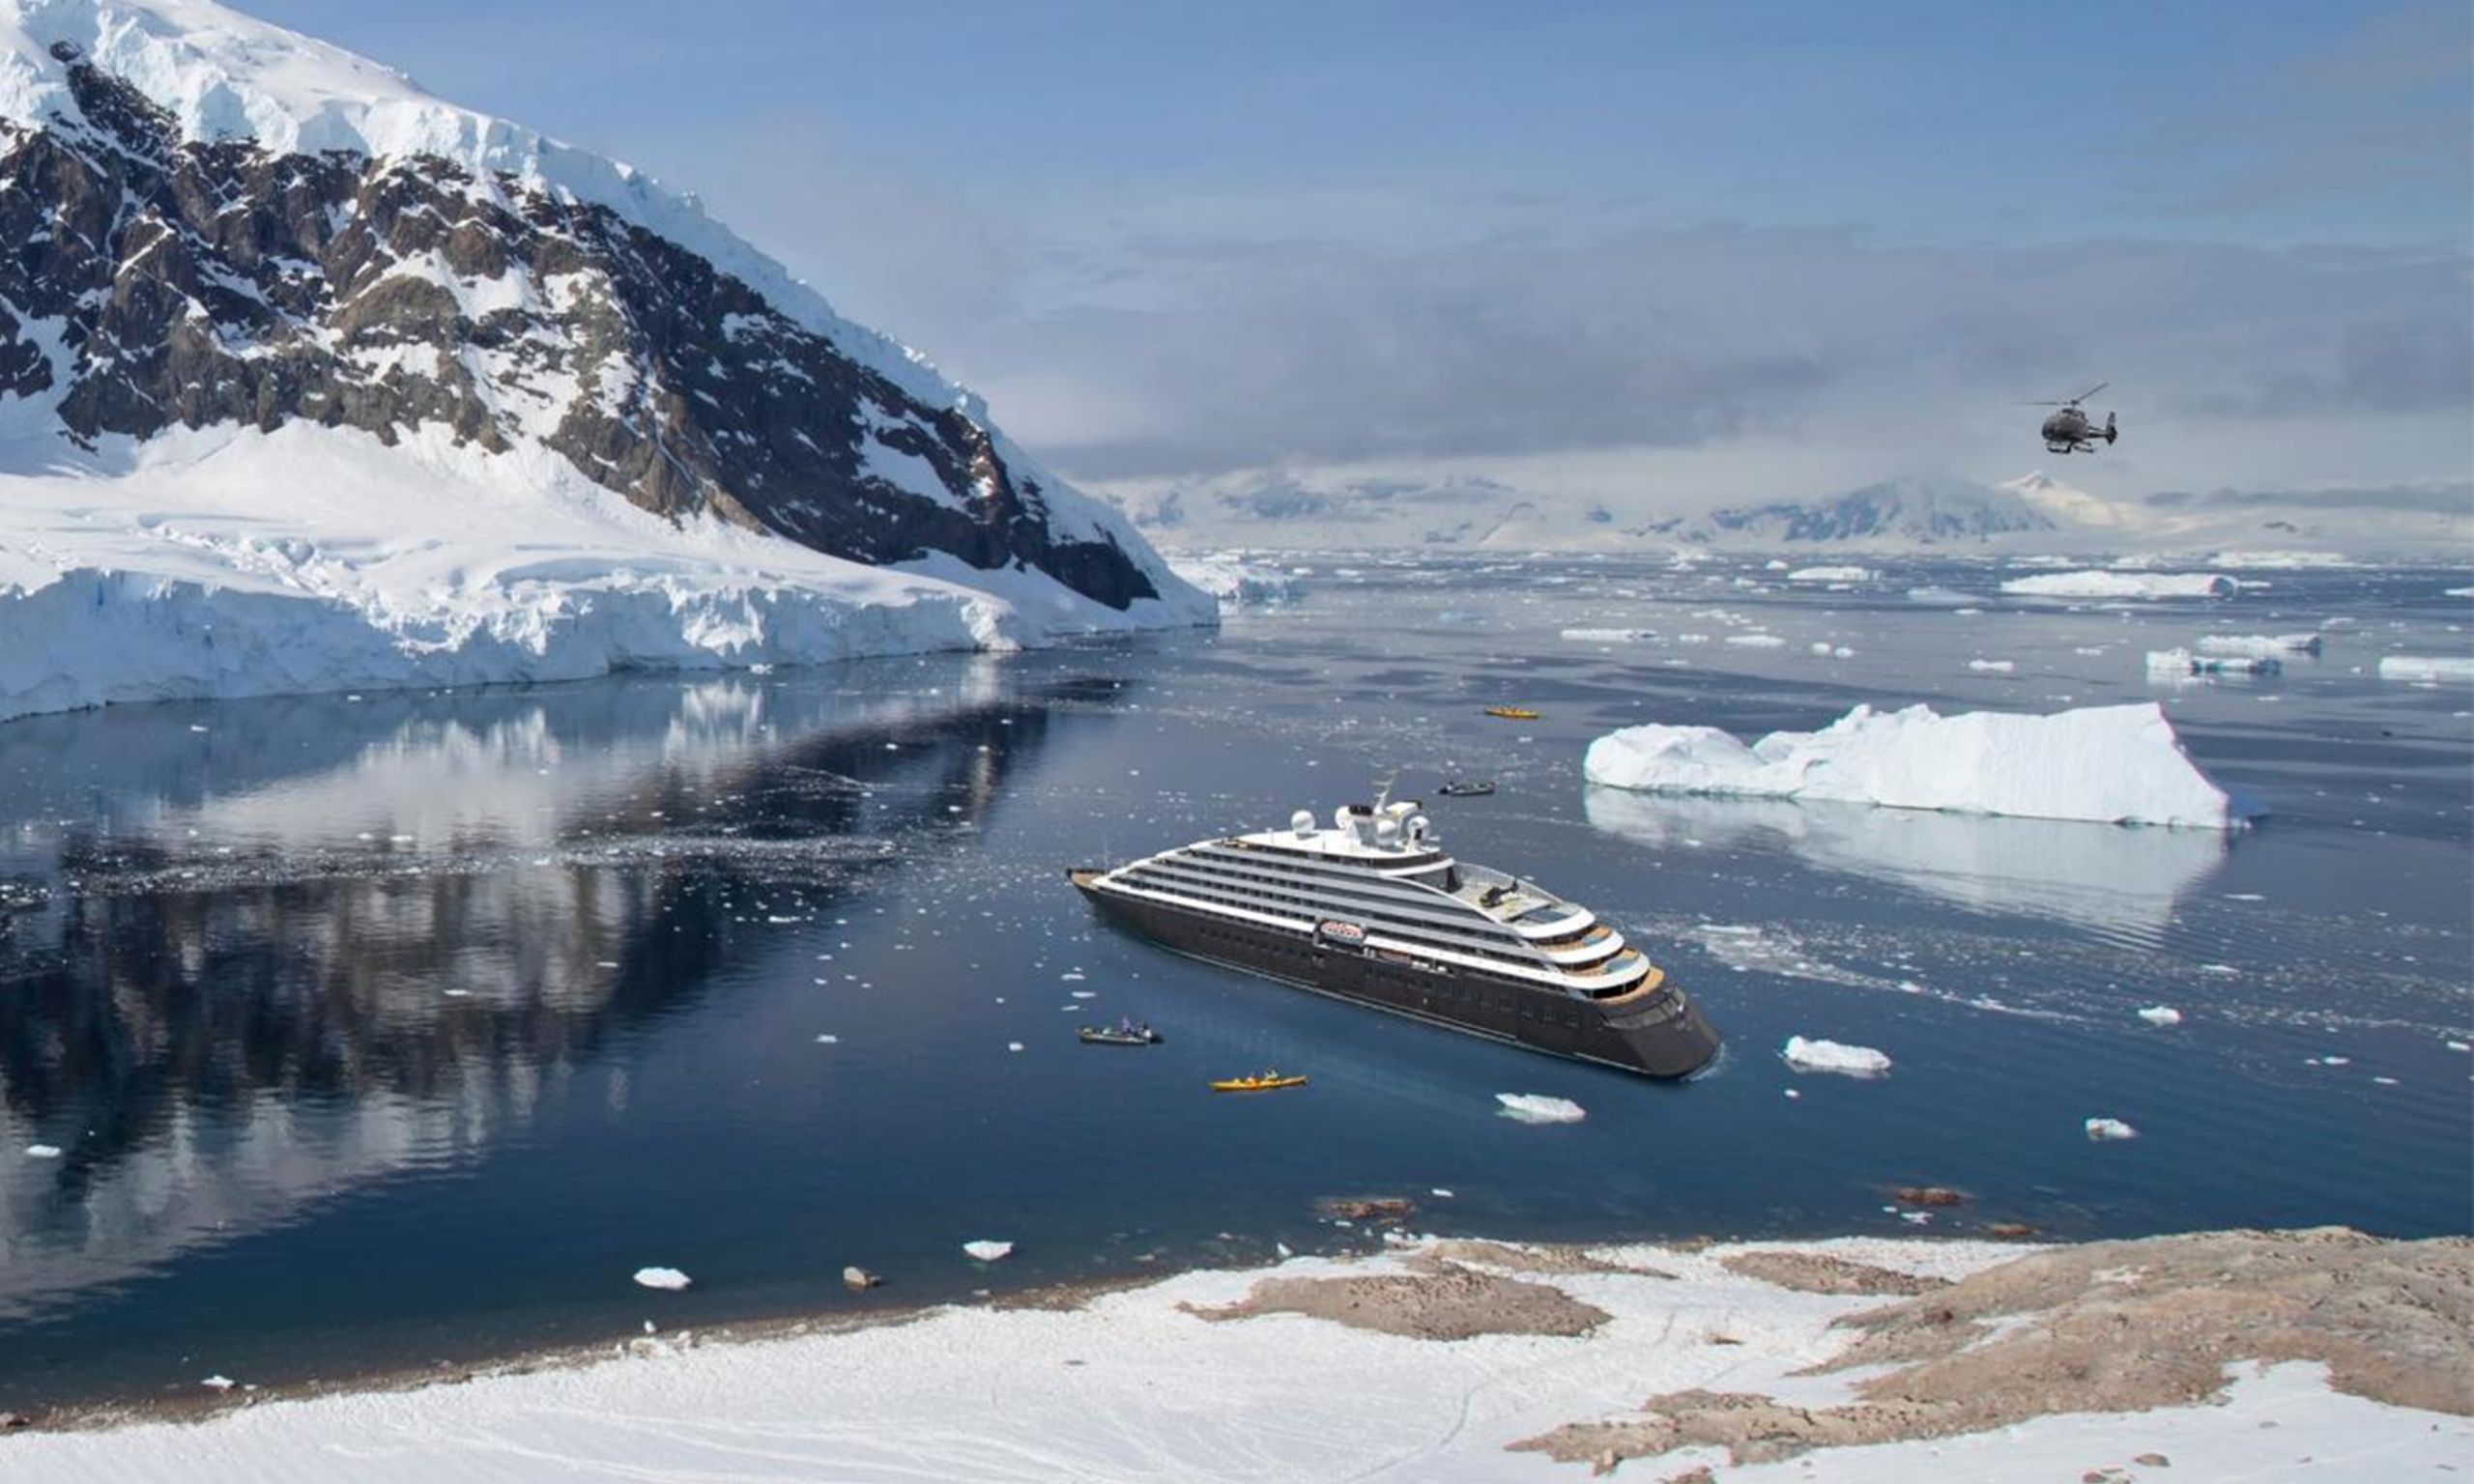 Incentive Reise als Expeditions-Kreuzfahrt mit OceanEvent bis 200 Pax in die Arktis / Antarktis - Ihre Entdeckungsjacht